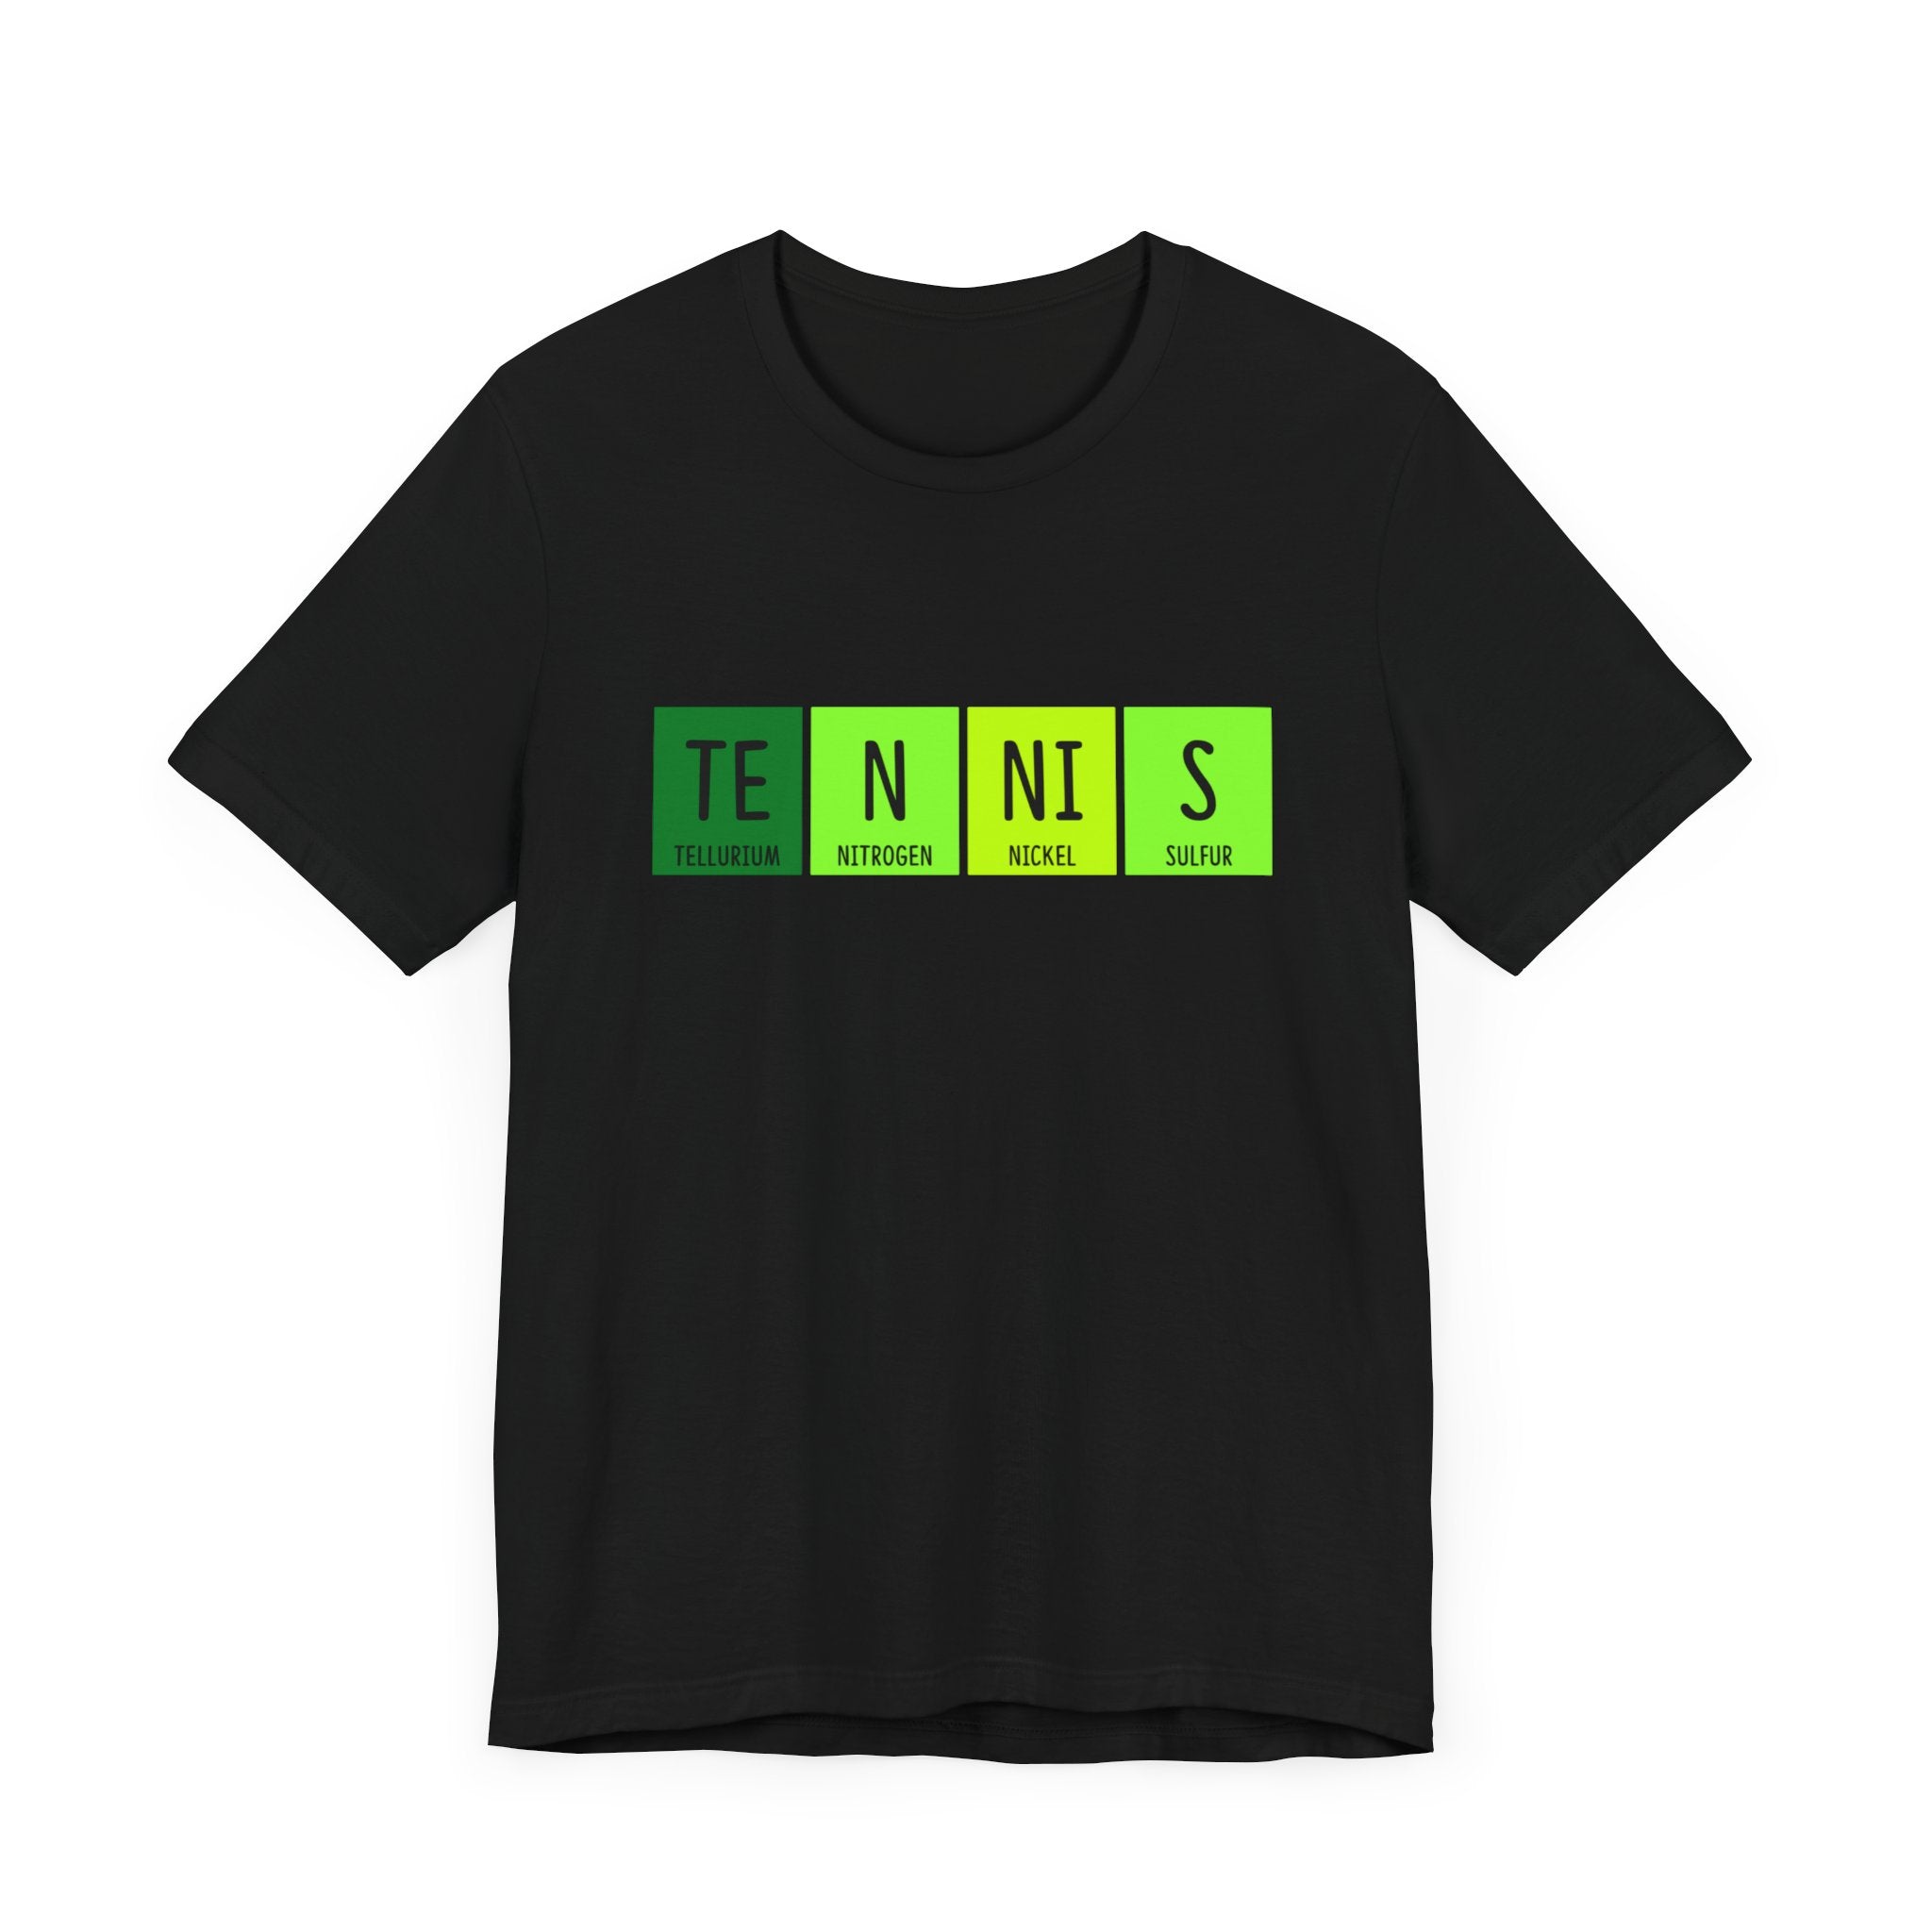 T-N-NI-S T-Shirt